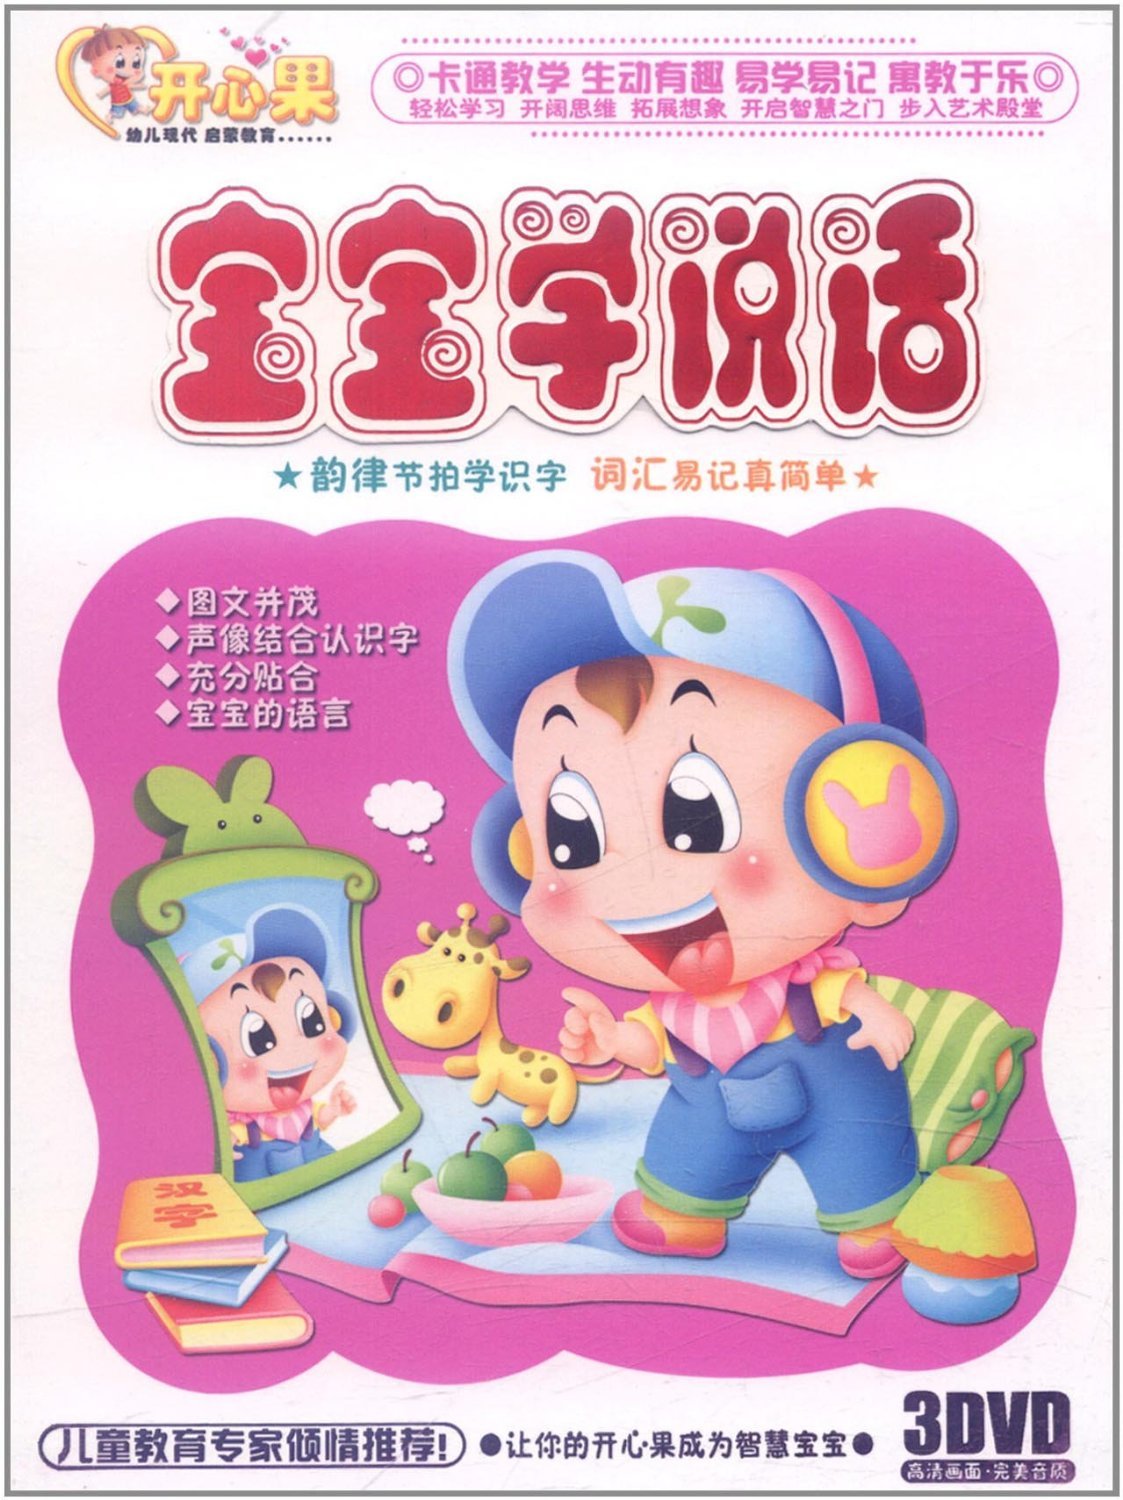 DVD ดีวีดีเรียนภาษาจีนสำหรับเด็ก ชุด ลูกน้อยฝึกพูด 3 แผ่น